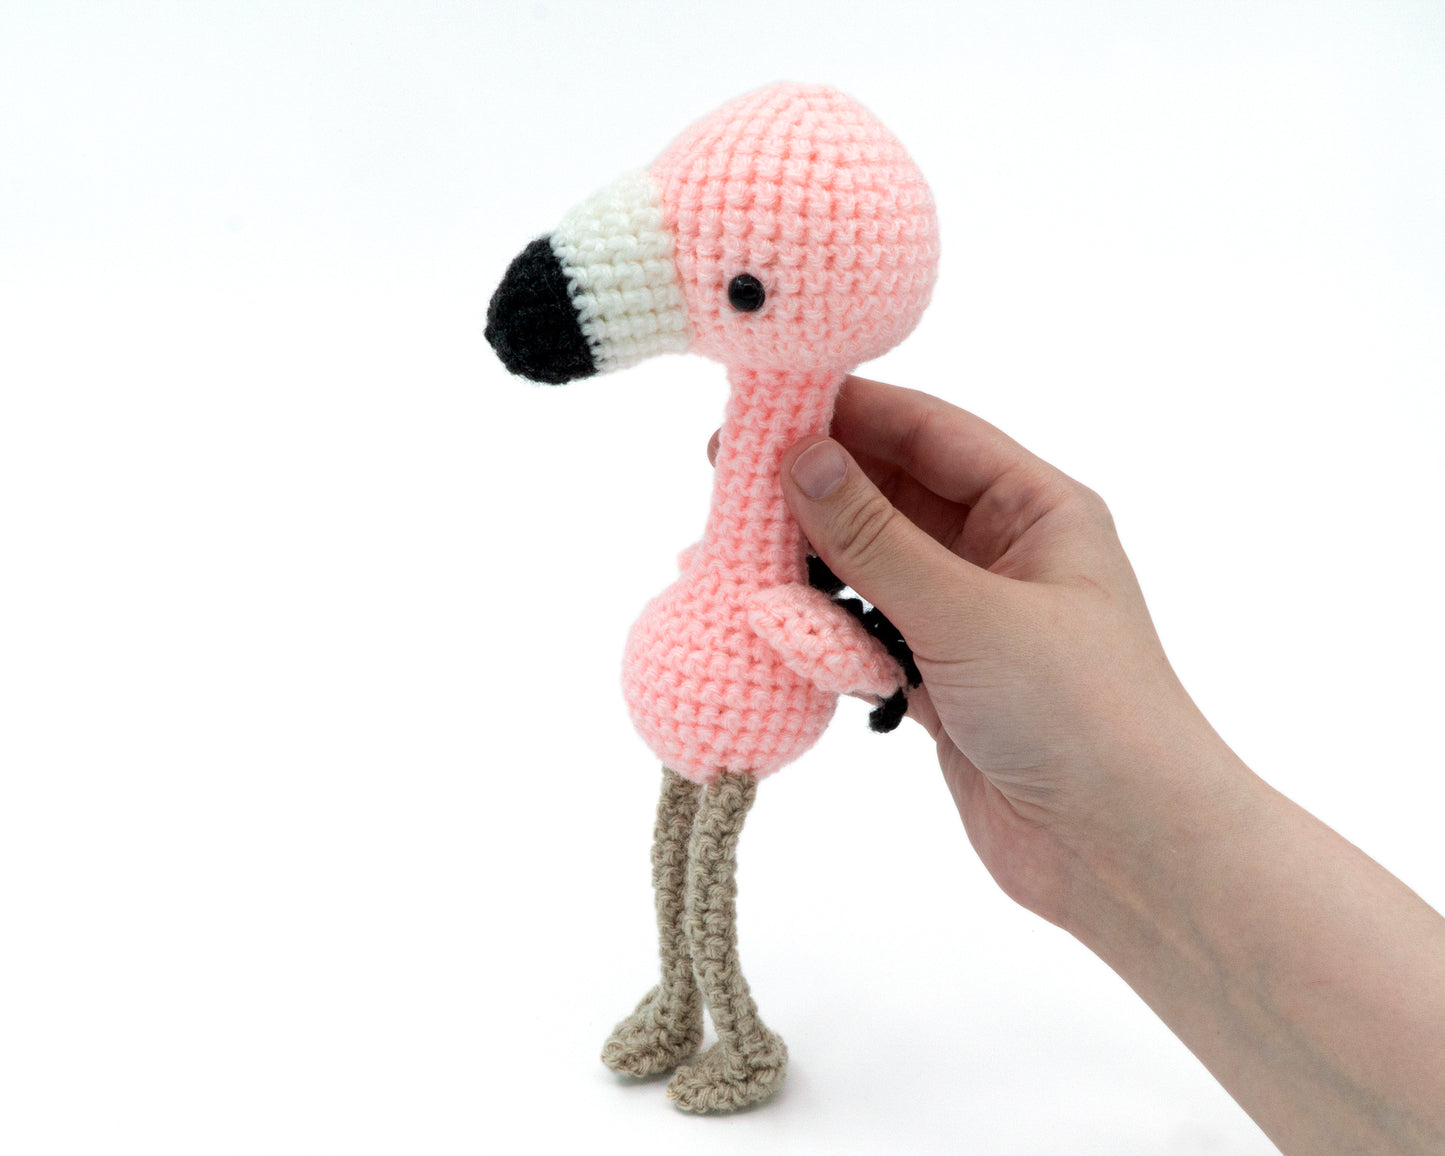 amigurumi crochet flamingo pattern in hand for size comparison